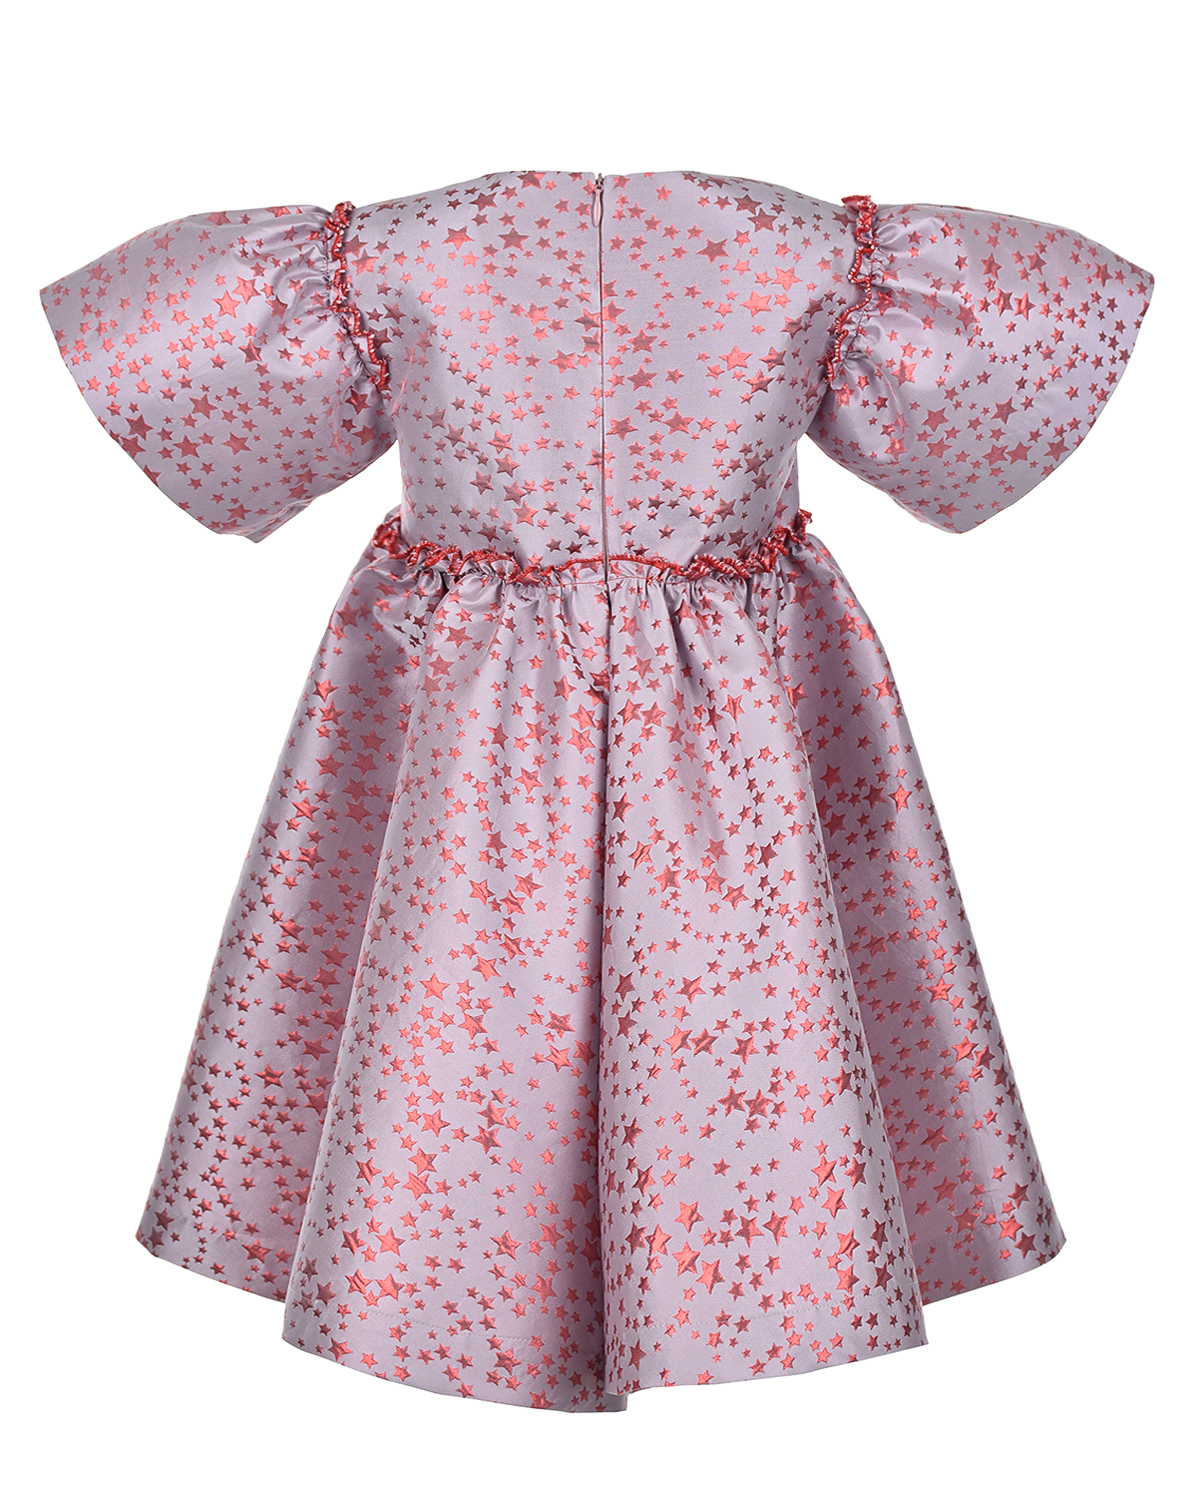 Жаккардовое платье с декором в форме звездочек Zhanna&Anna, размер 104, цвет розовый - фото 2